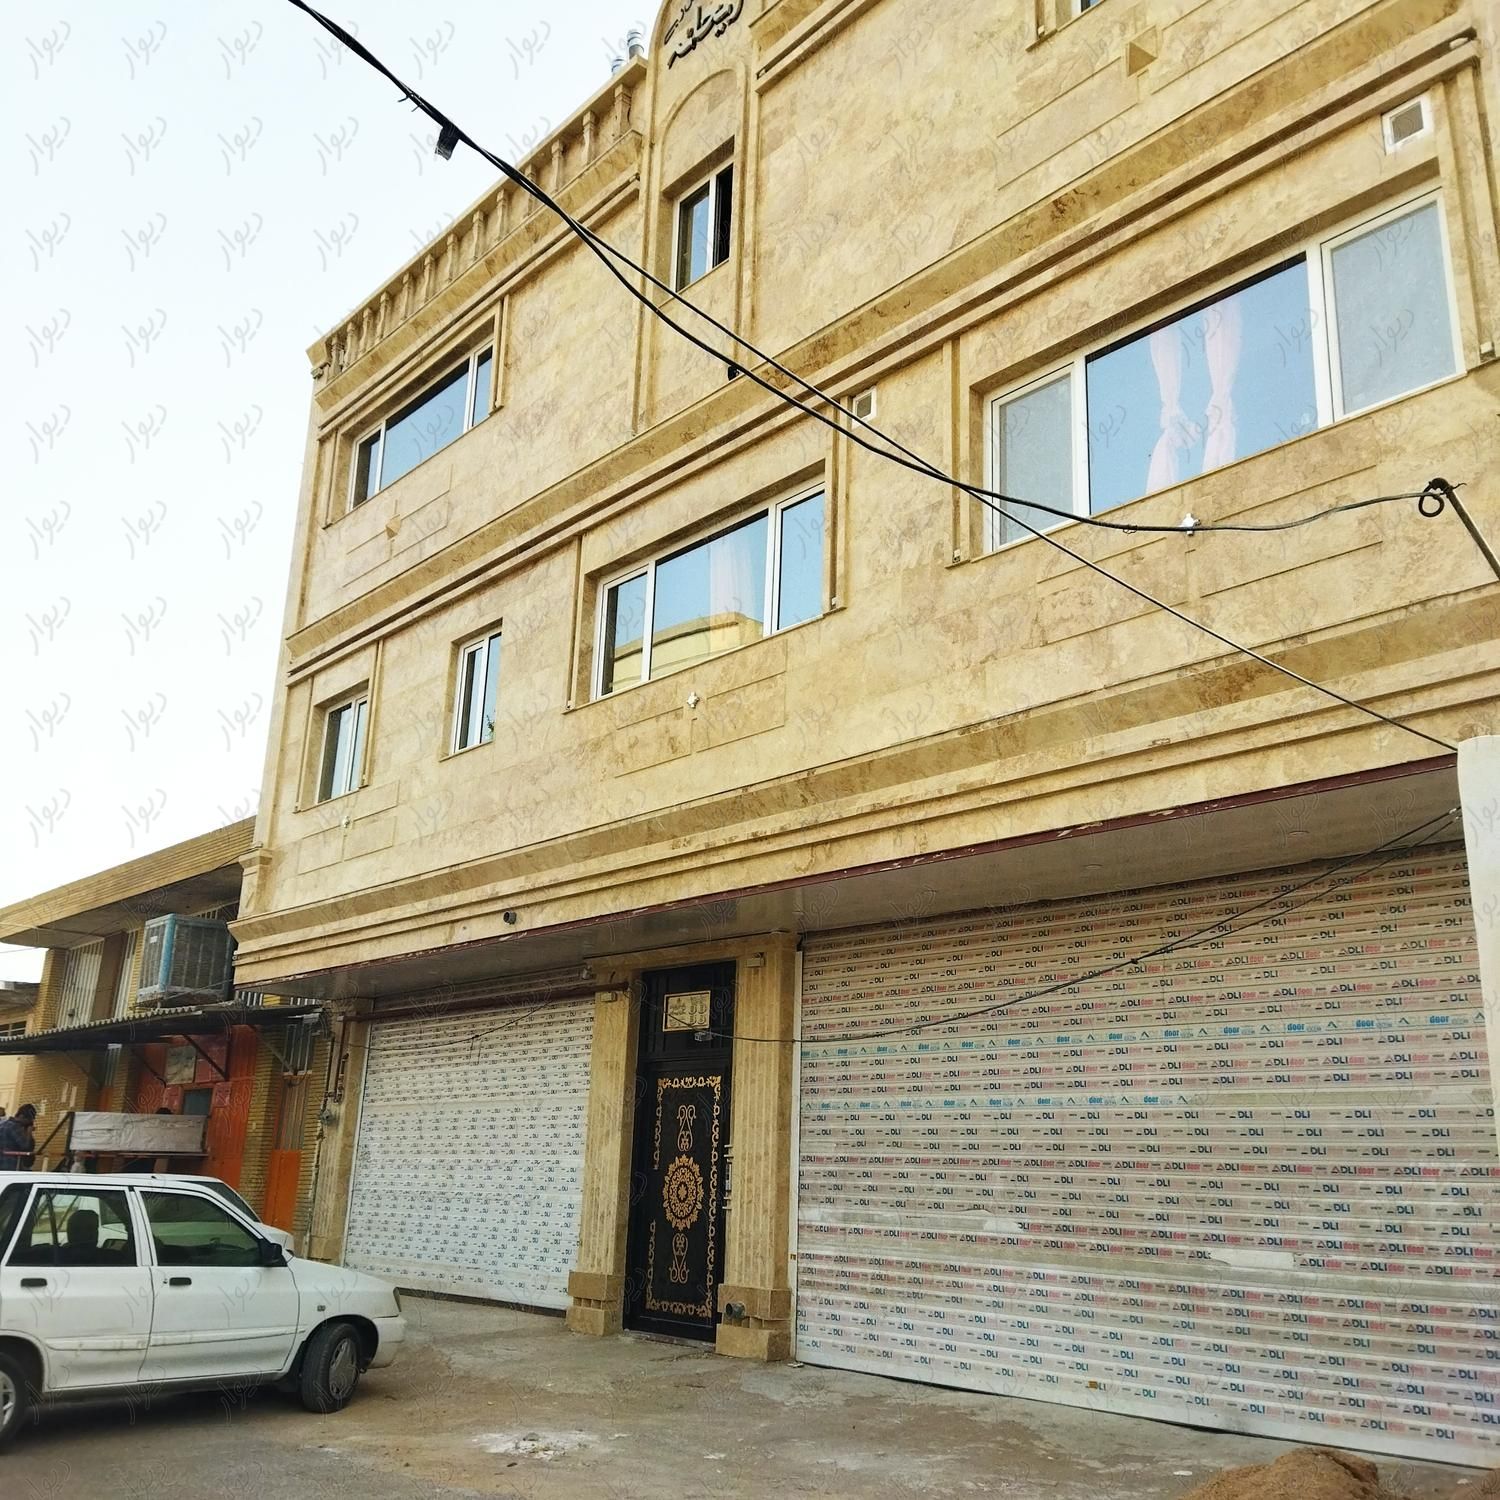 مغازه جوادیه(شهرک پردیس)پاخور بالابا سرویس بهداشتی|اجارهٔ مغازه و غرفه|شیراز, شهرک پردیس|دیوار